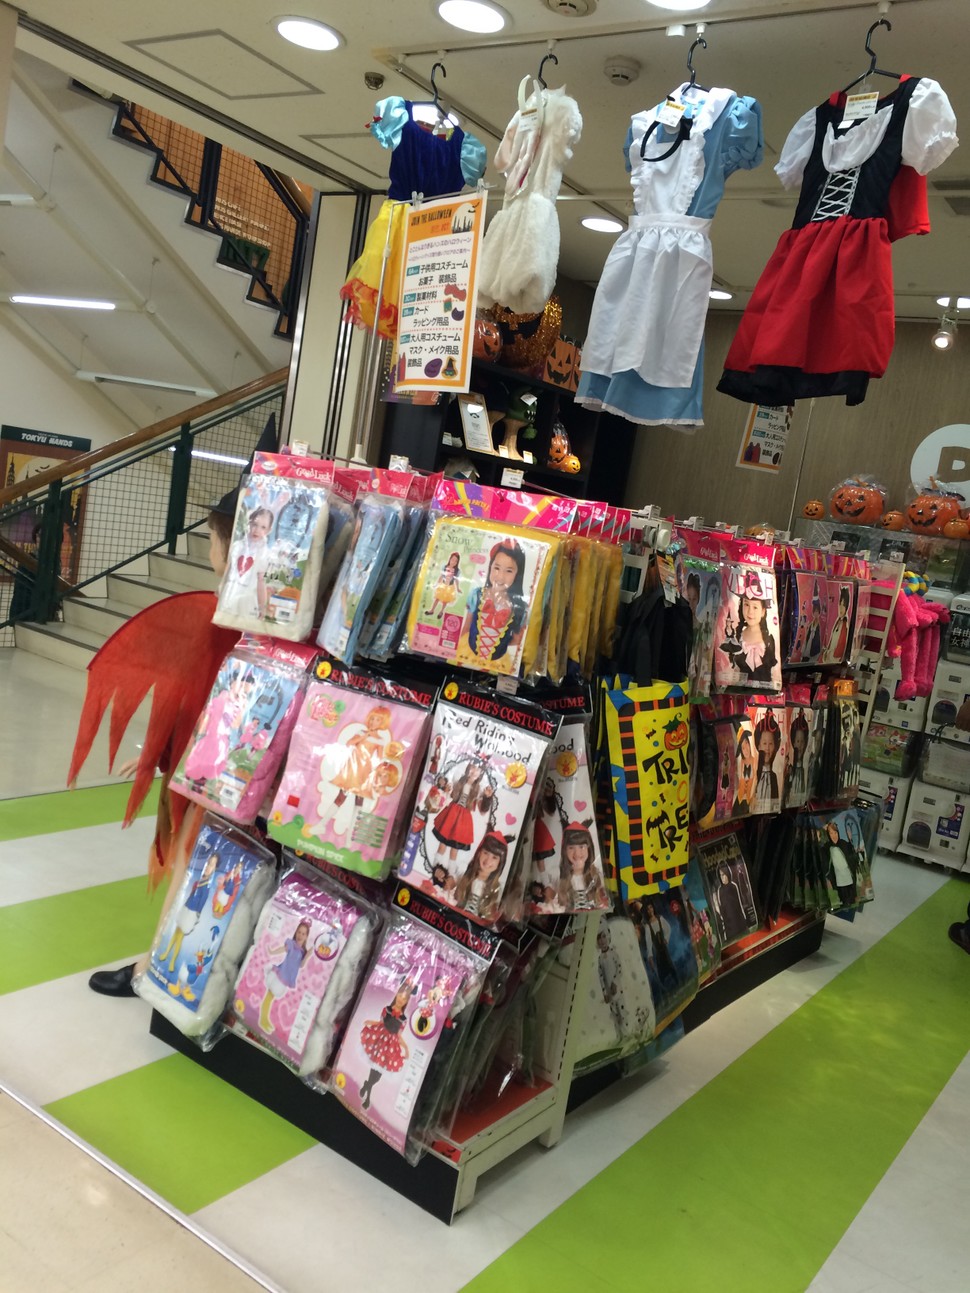 渋谷でハロウィン コスプレ 仮装の衣装が売っているお店まとめ Playlife プレイライフ